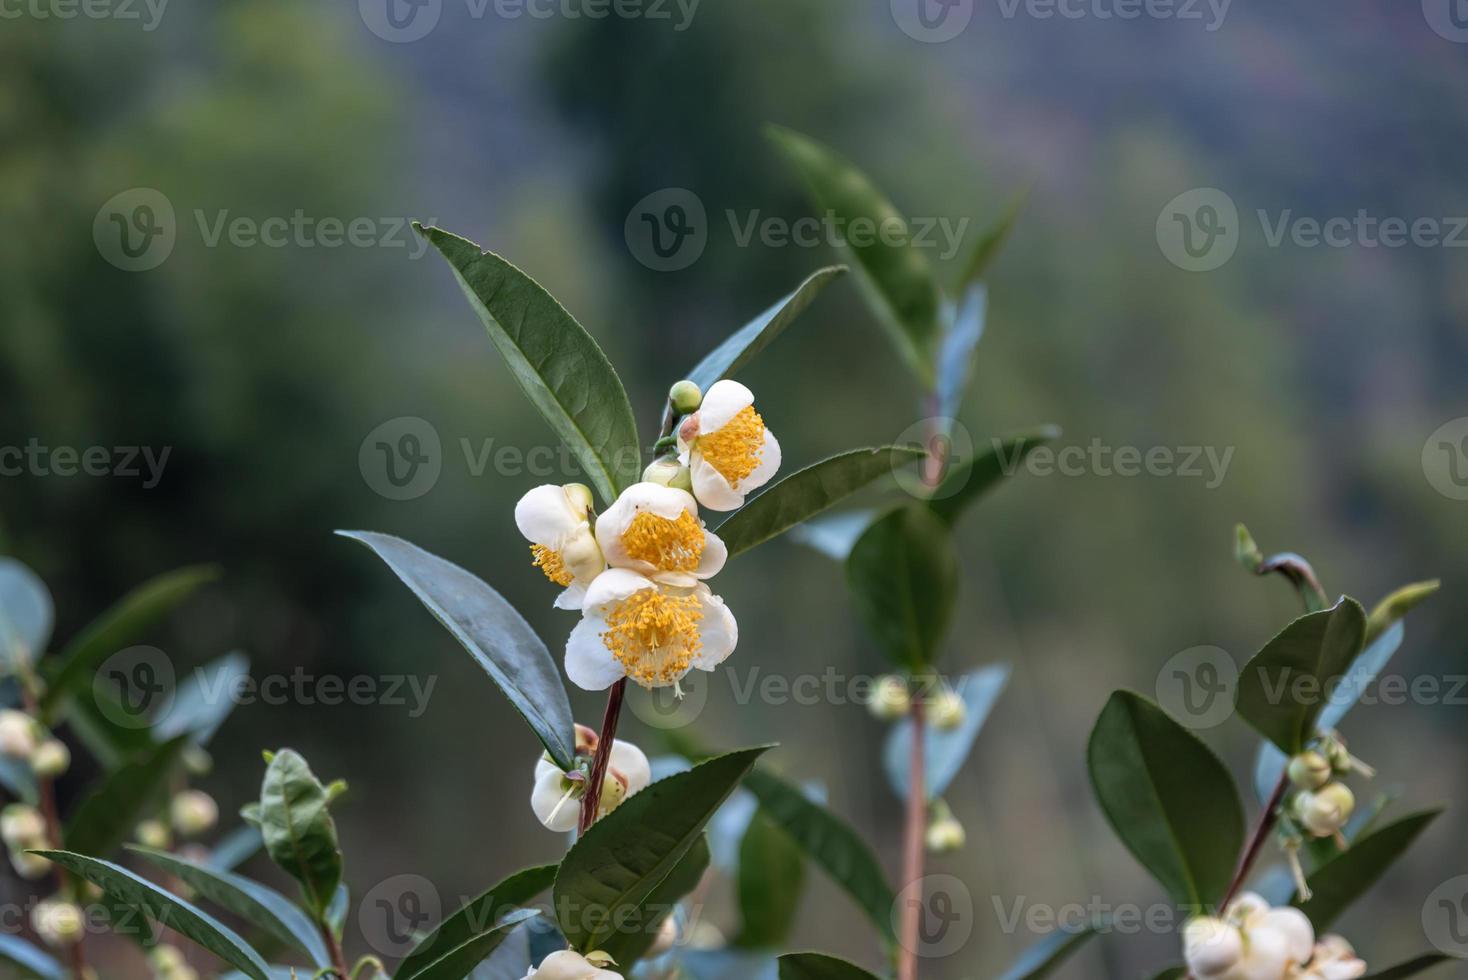 sotto il sole, i fiori del tè con petali bianchi e nuclei di fiori gialli sono nella foresta del tè selvatico foto